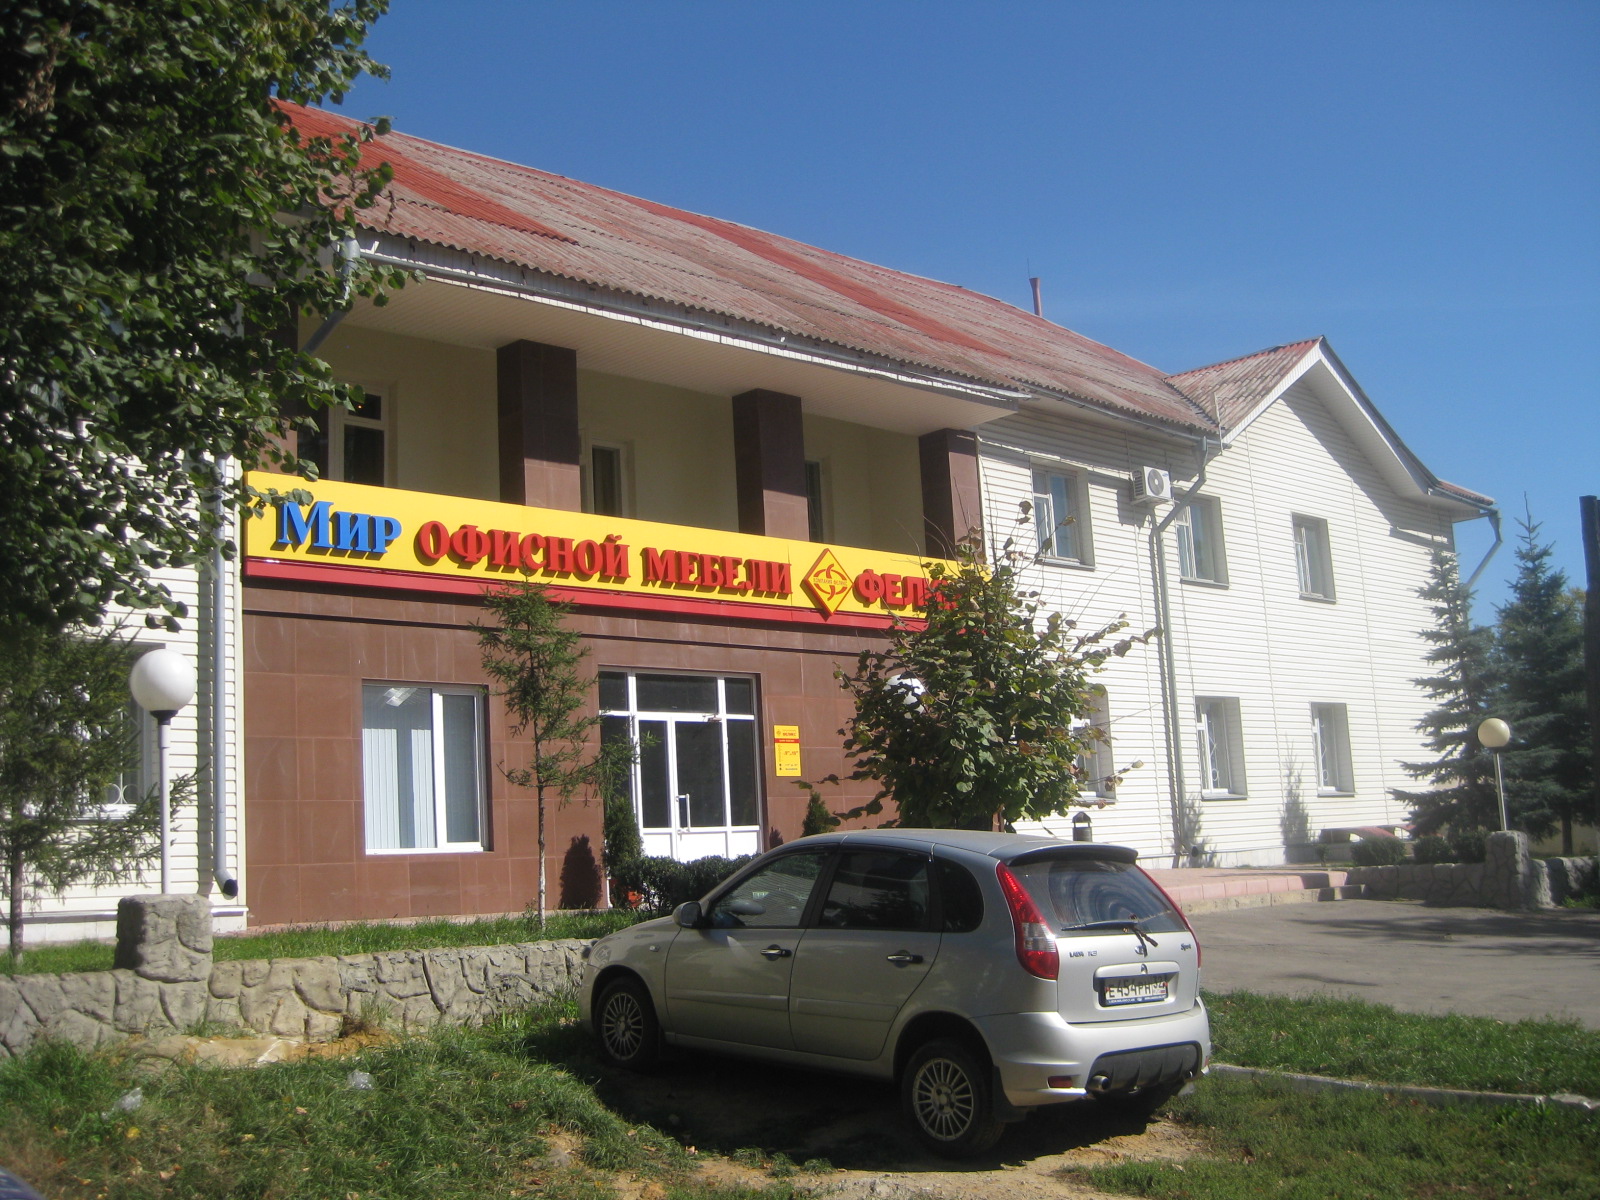 Офисный мир км ростов на дону. 12 Стульев Саратов заводской район.